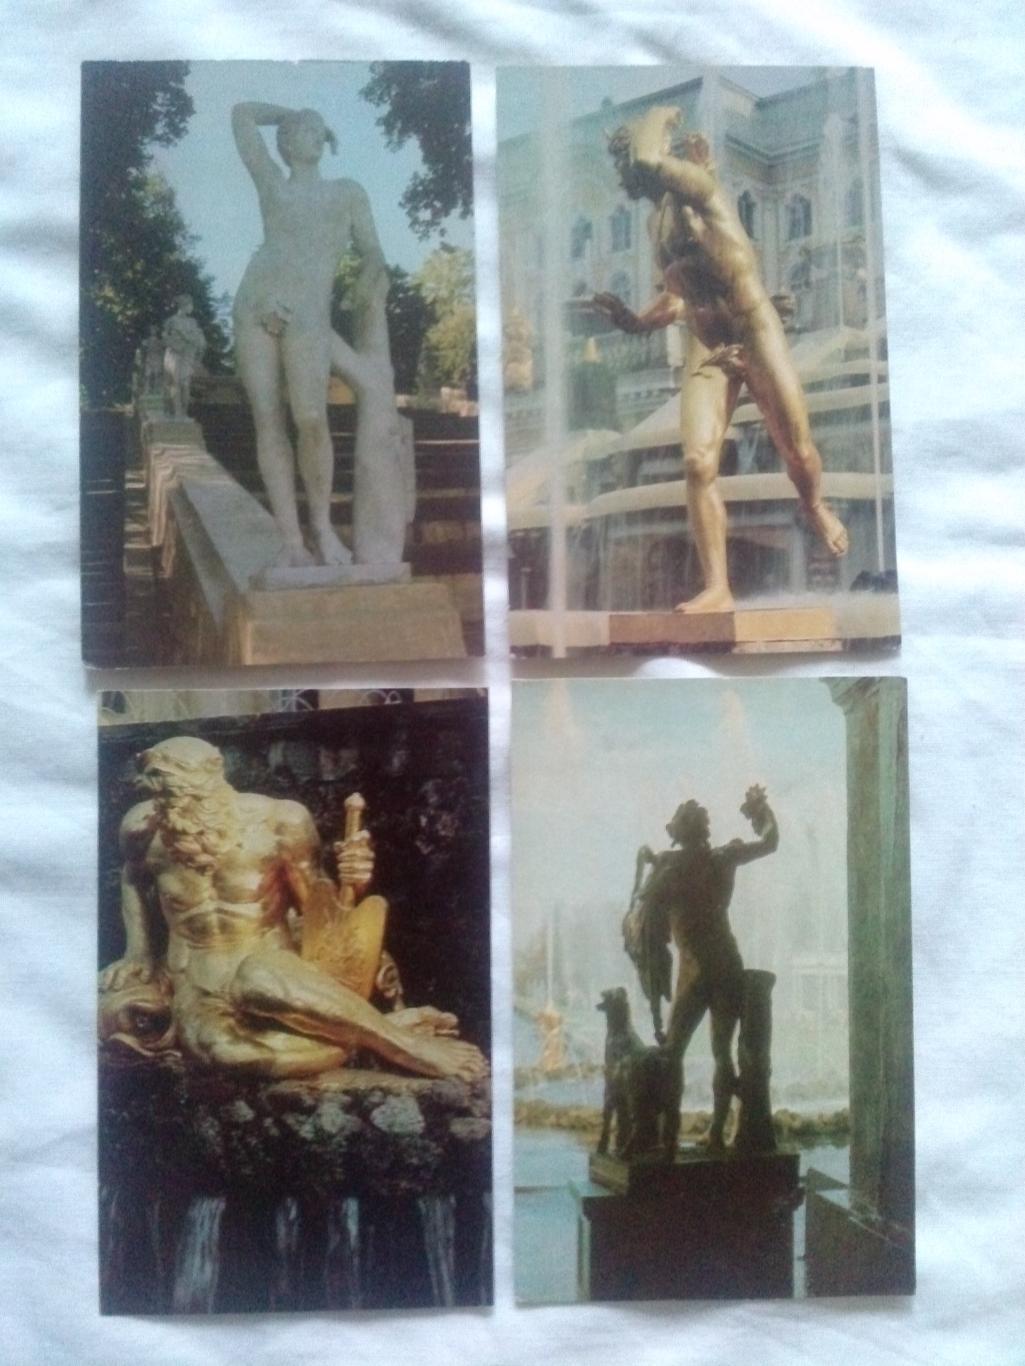 Скульптура Петродворца (Ленинград) 1971 г. полный набор - 18 открыток (идеал) 4